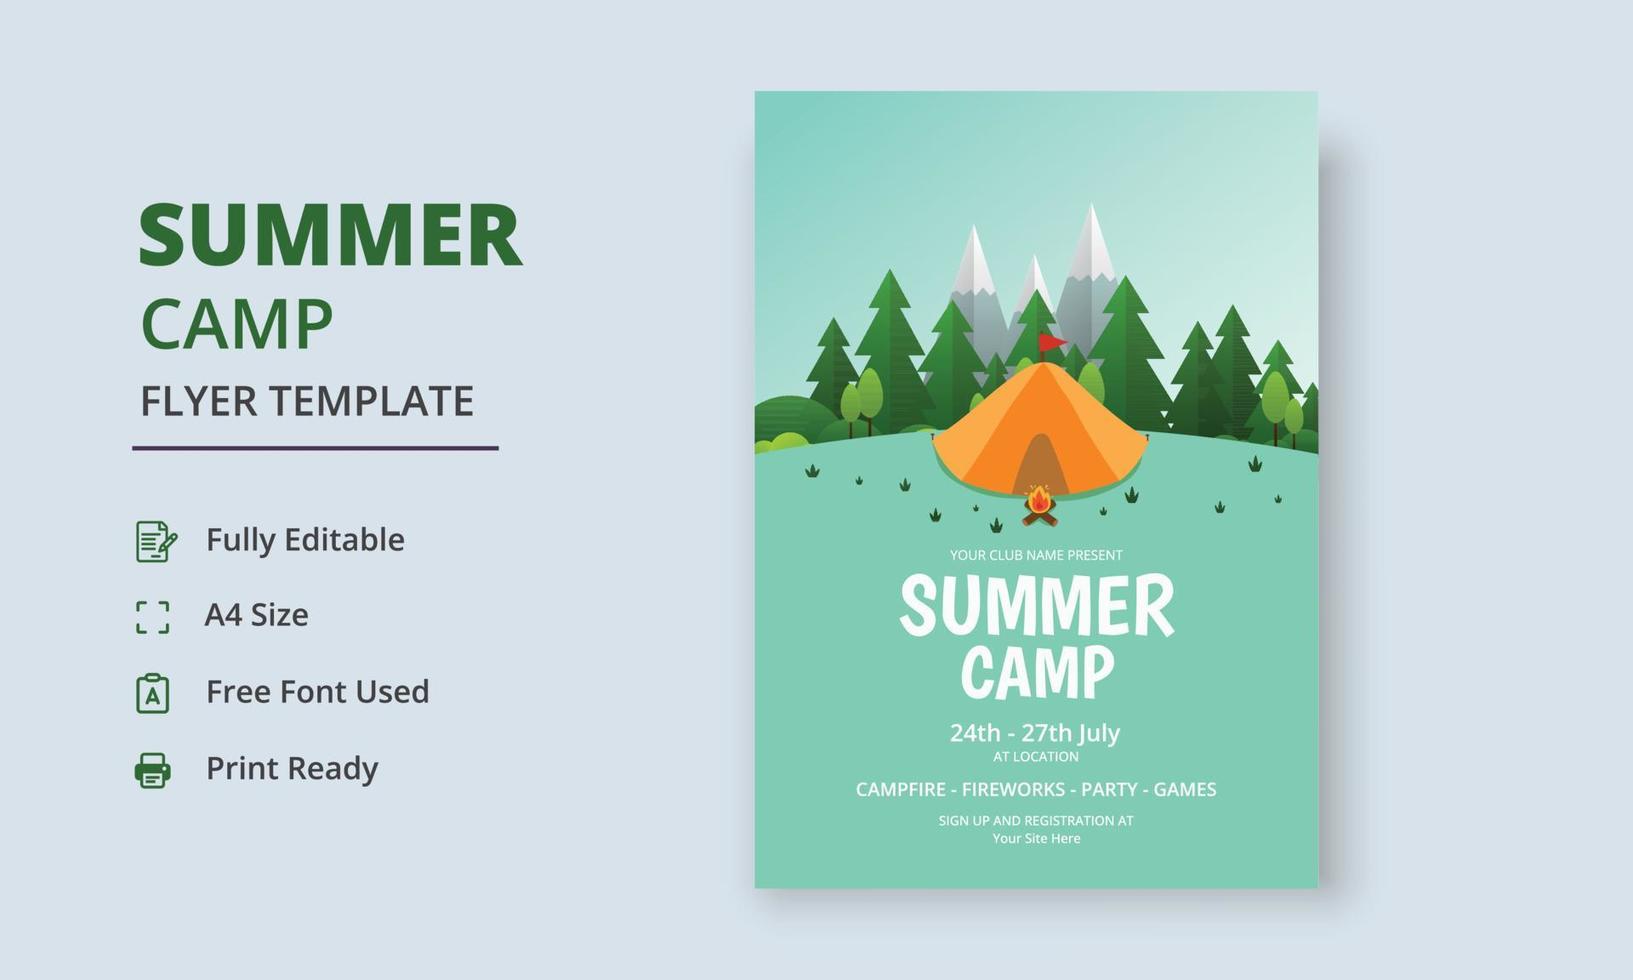 Summer Camp Flyer Template, Kids Summer Camp Flyer Template, Scouts Summer Camp Flyer Template vector